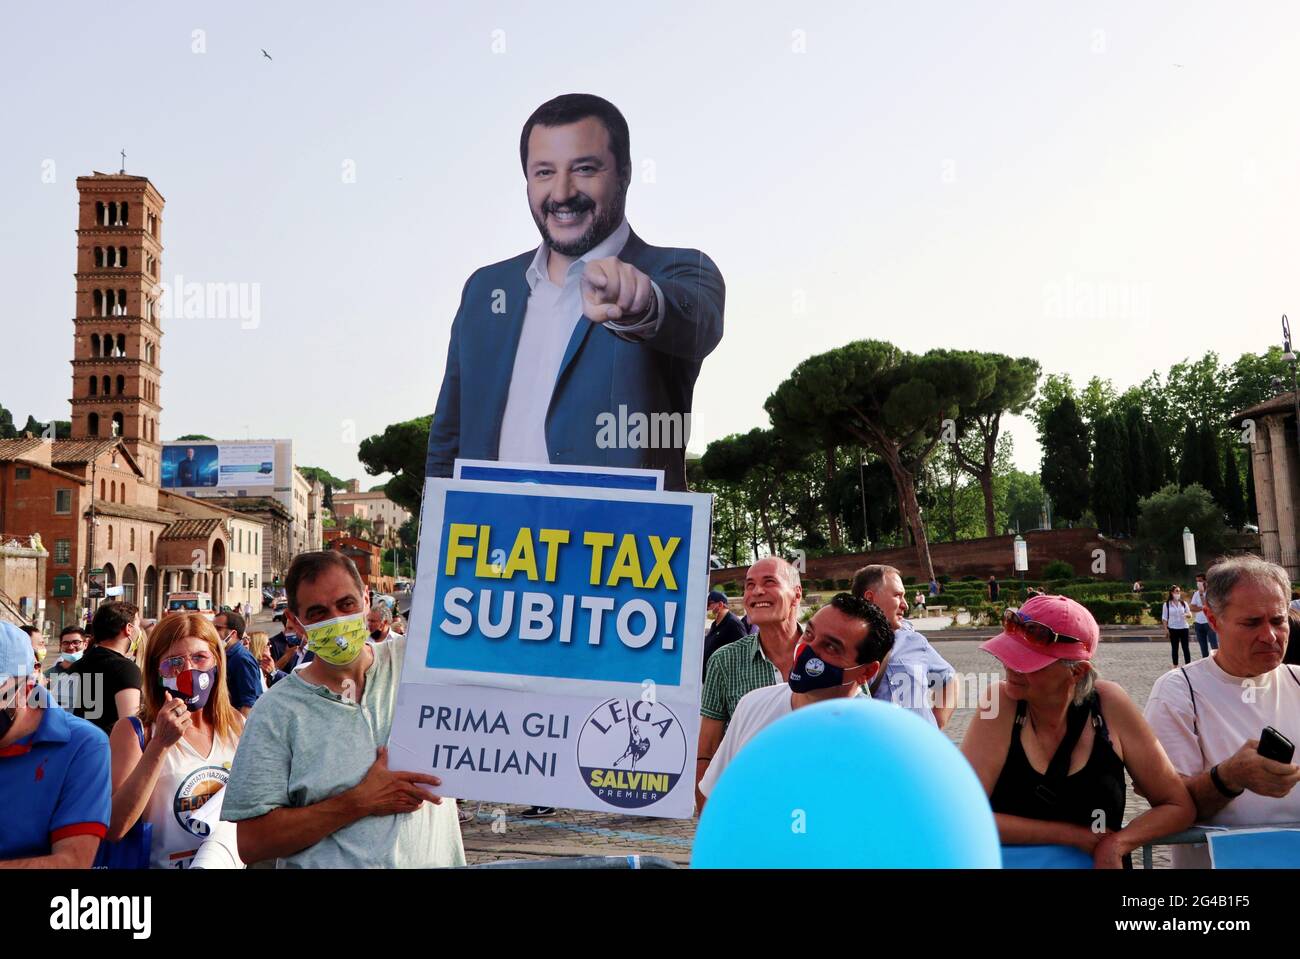 Partidarios con un cartón de Matteo Salvini, líder del Partido conservador italiano Lega, visto en la convención 'Prima l'Italia' en Roma, el 19 de junio de 2021. Matteo Salvini, ex Viceprimer Ministro de Italia y Ministro del Interior de junio de 2018 a septiembre de 2019, ha sido Secretario de la Liga del Norte, actualmente Primera Ministra de la Lega per Salvini, desde 2013. Salvini se opone a la inmigración ilegal en Italia y la UE, así como a la gestión de la UE de los solicitantes de asilo y refugiados. El cartel, que dice: Impuesto fijo ahora, pide una reforma fiscal en Italia. (ELISA Gestri/Sipa EE.UU.) Foto de stock